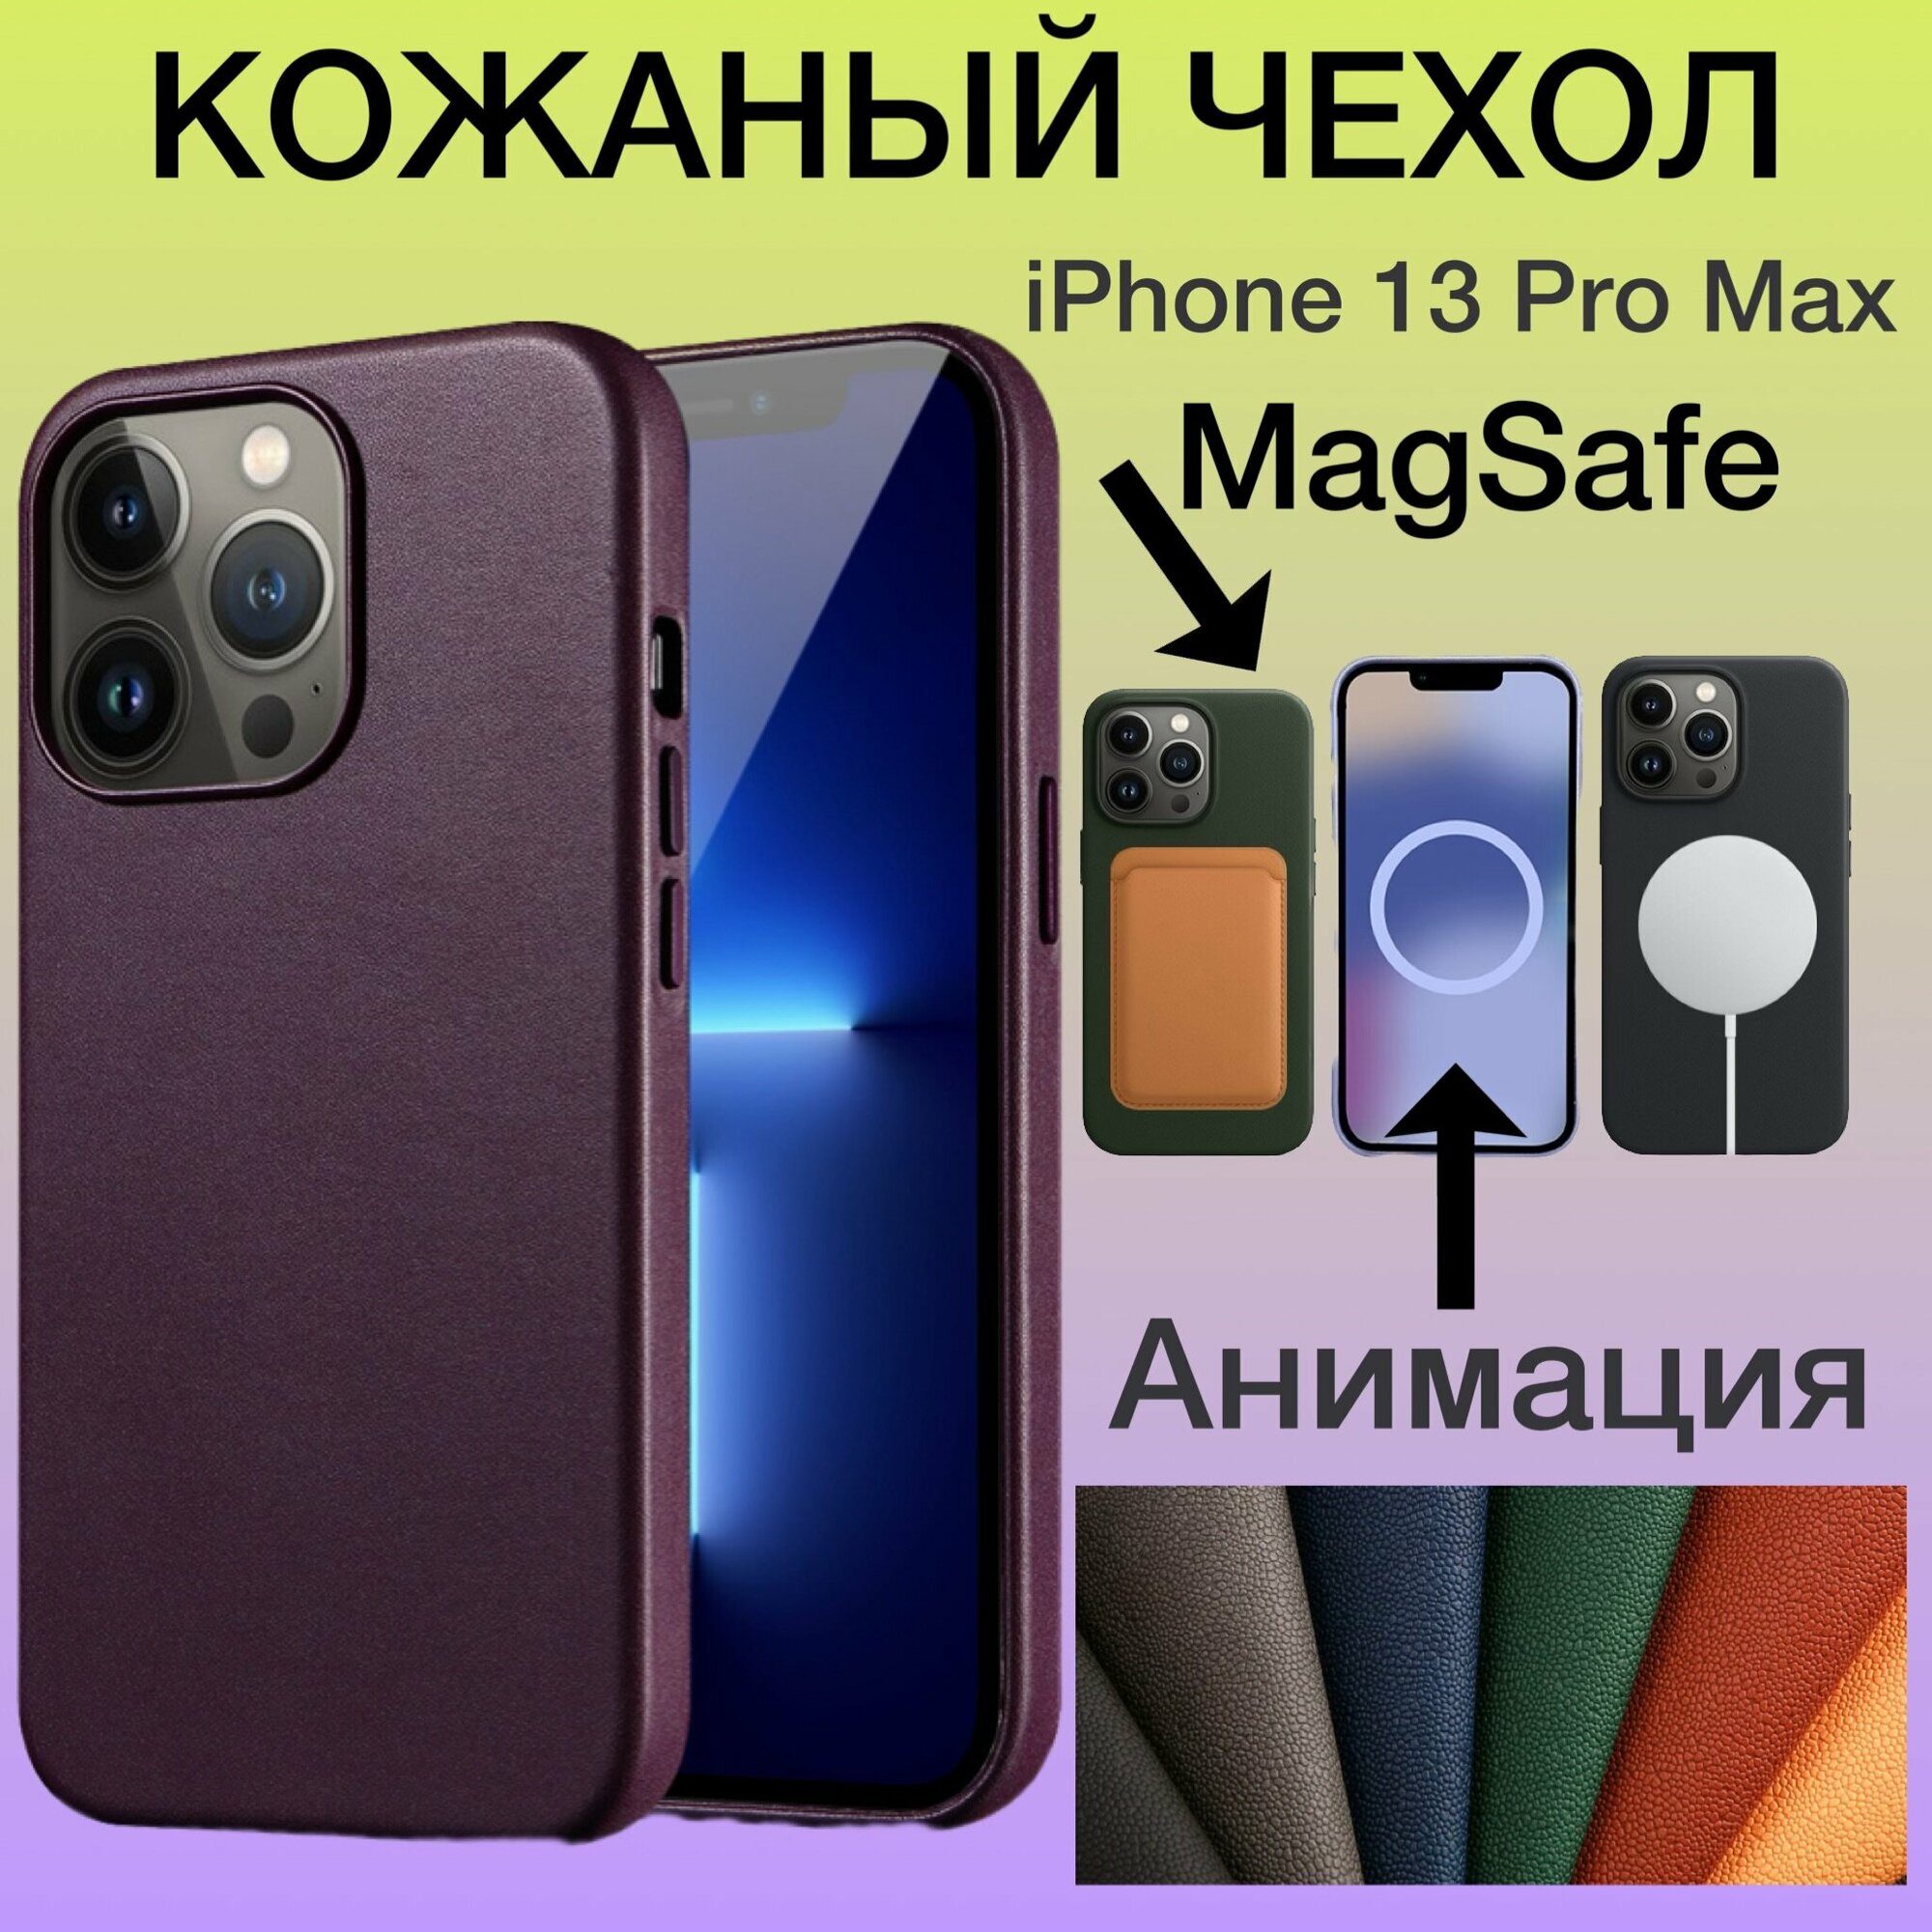 Кожаный чехол iPhone 13 Pro Max MagSafe с Анимацией